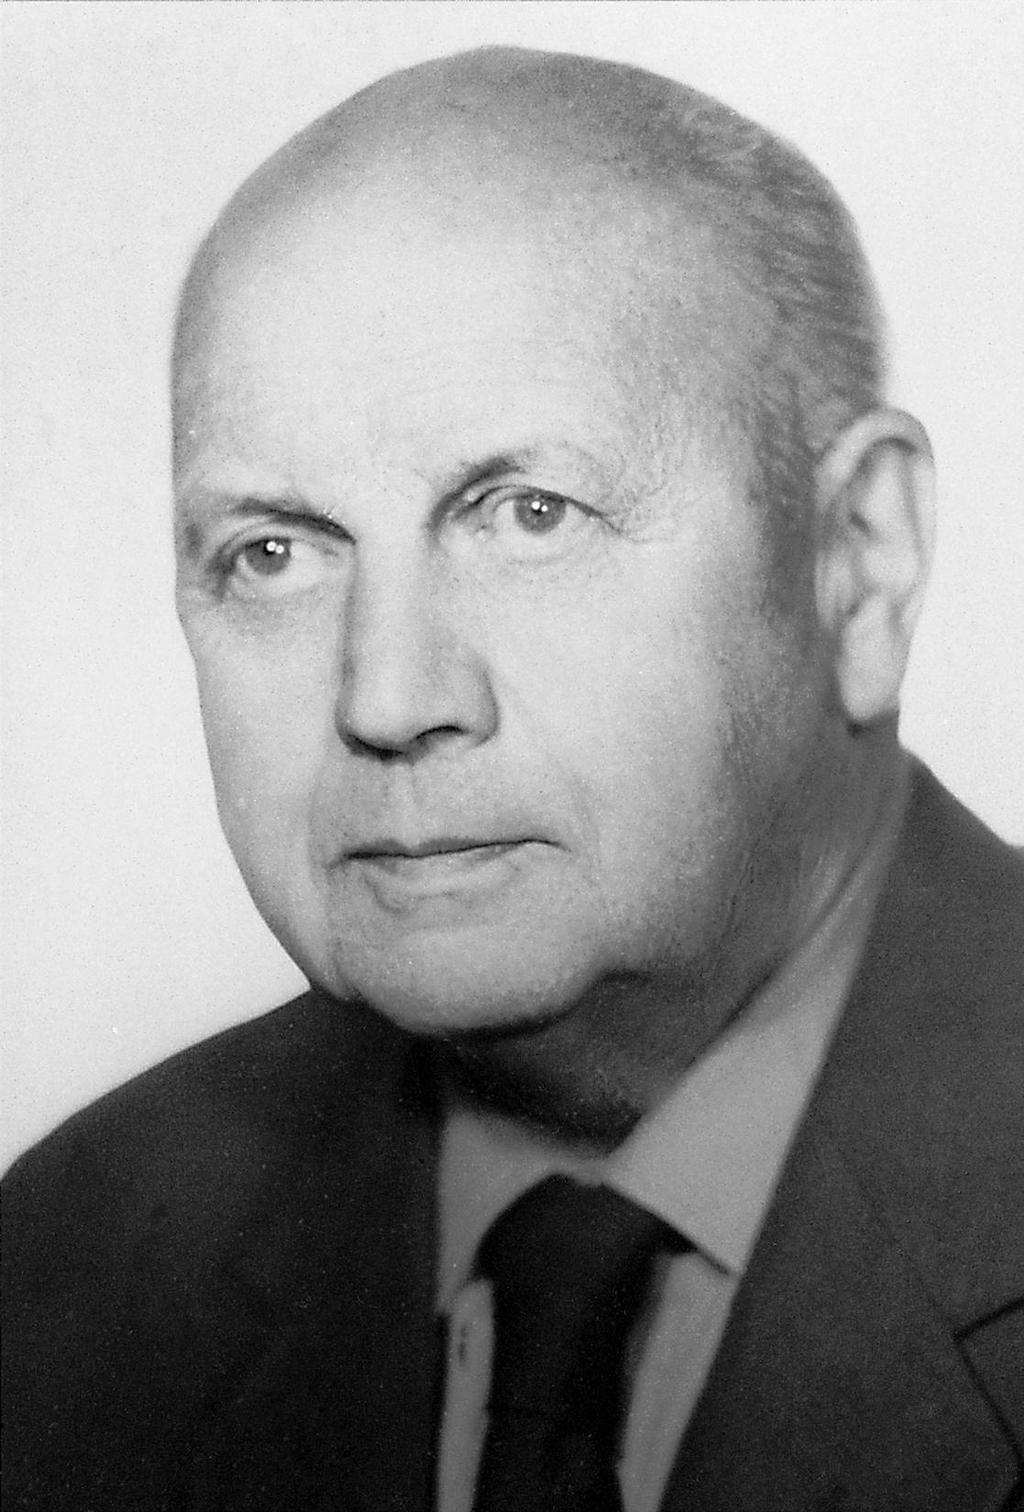 Jerzy Kondracki Urodzony 1 listopada 1908 r. w Warszawie, zmarł 13 kwietnia 1998 w Villach. Geograf i profesor Uniwersytetu Warszawskiego.